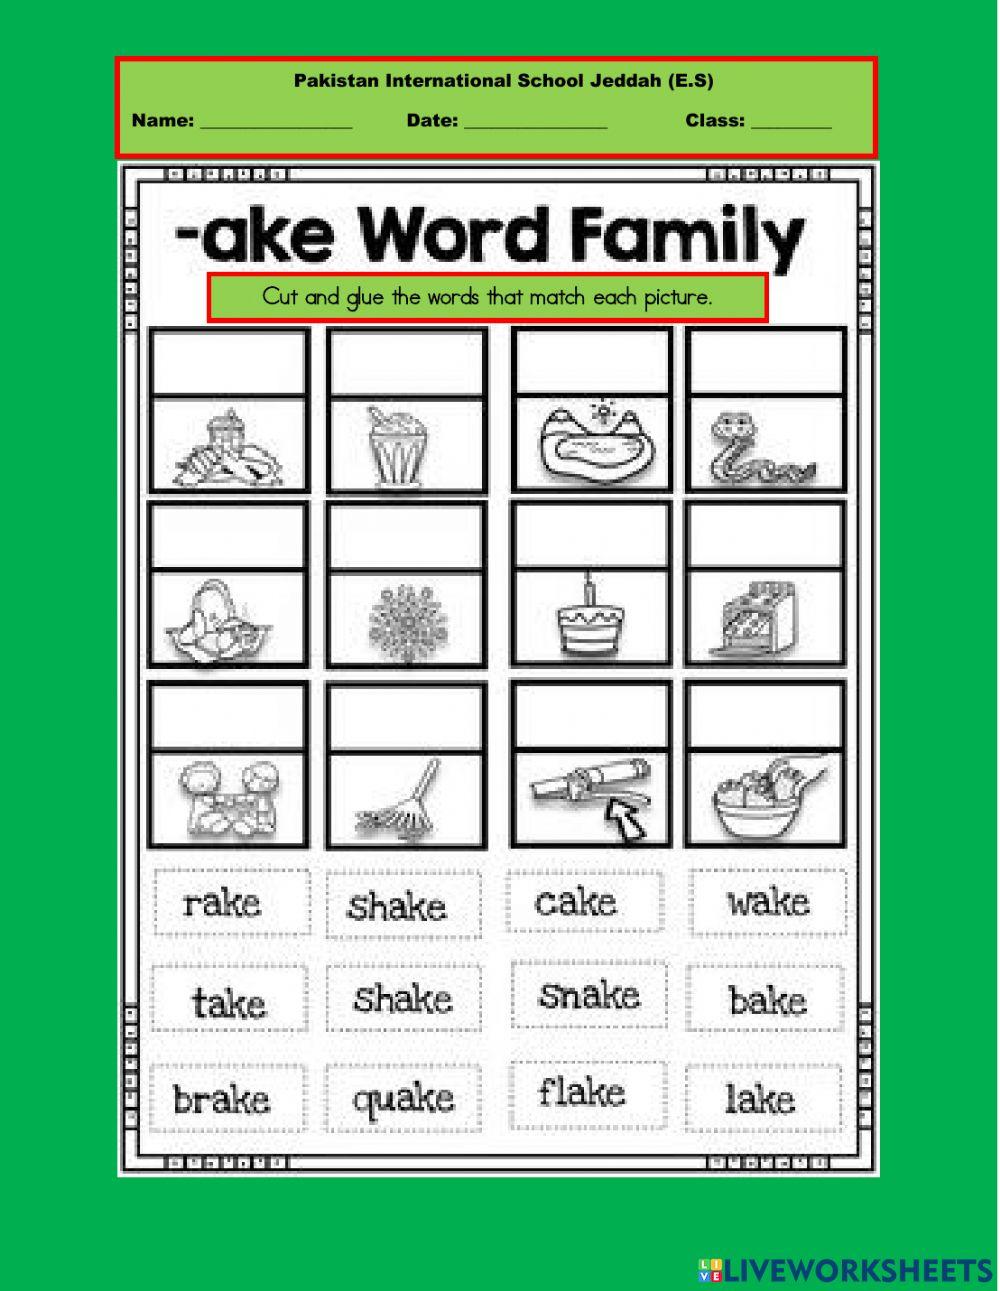 ake-family-words-worksheet-live-worksheets